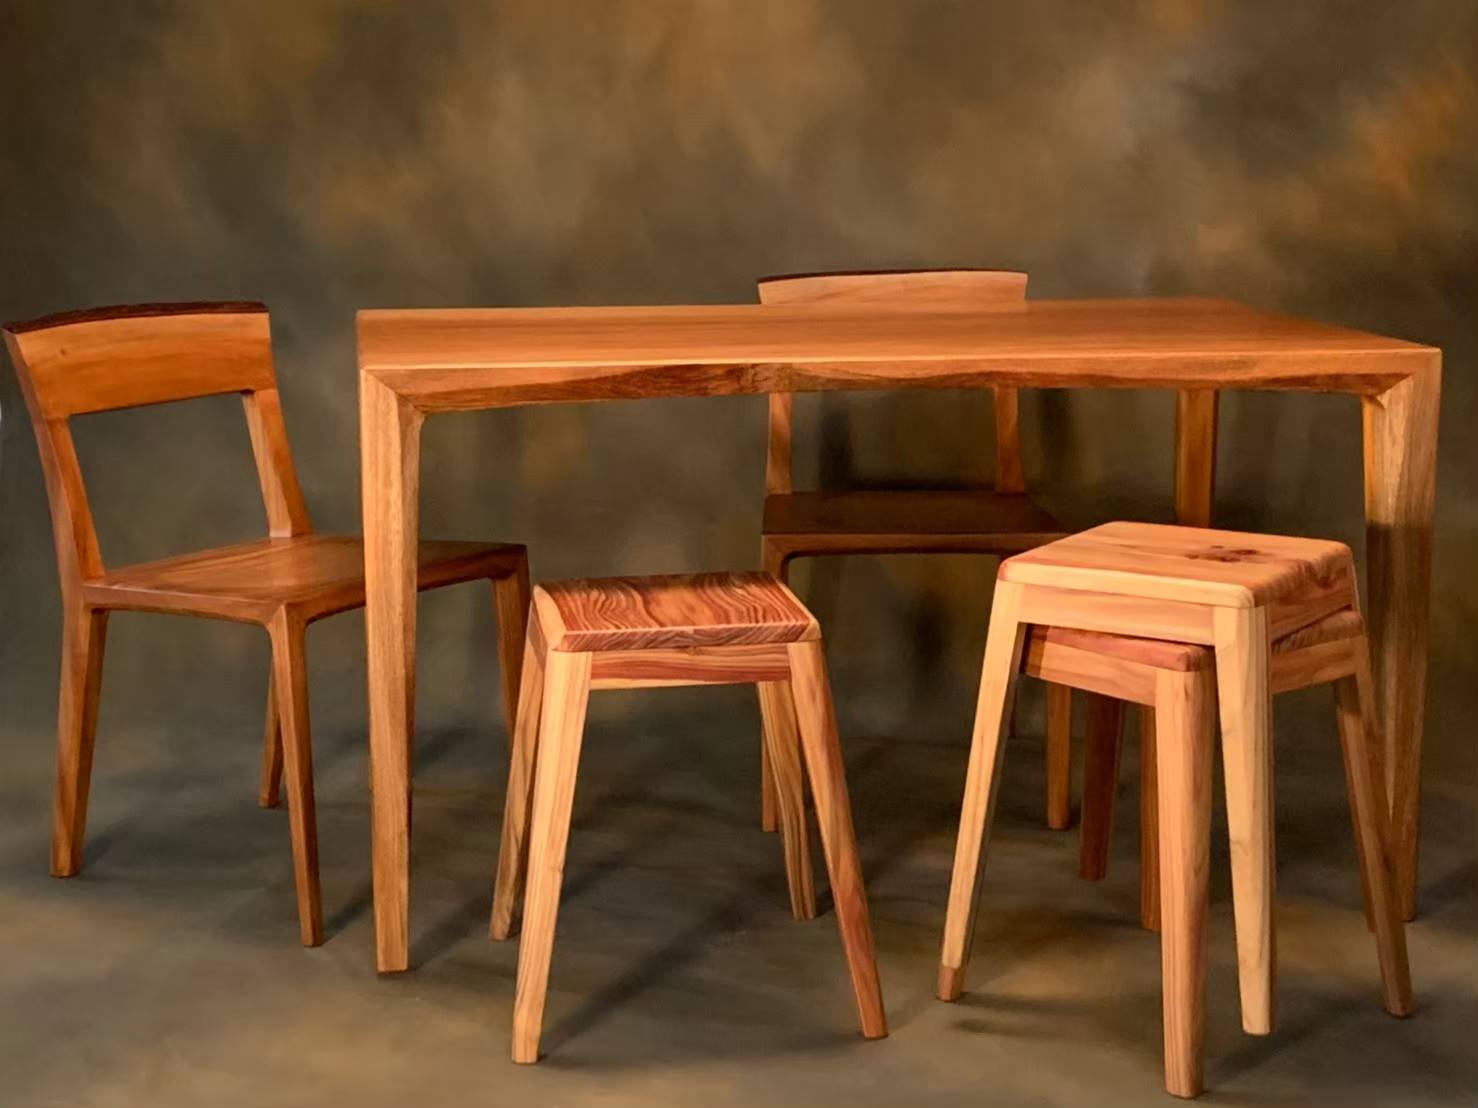 臺灣杉做成的木凳(圖右前方)；桌子和靠背椅(圖左)為大葉桃花心木製成。(照片來源：林務局)